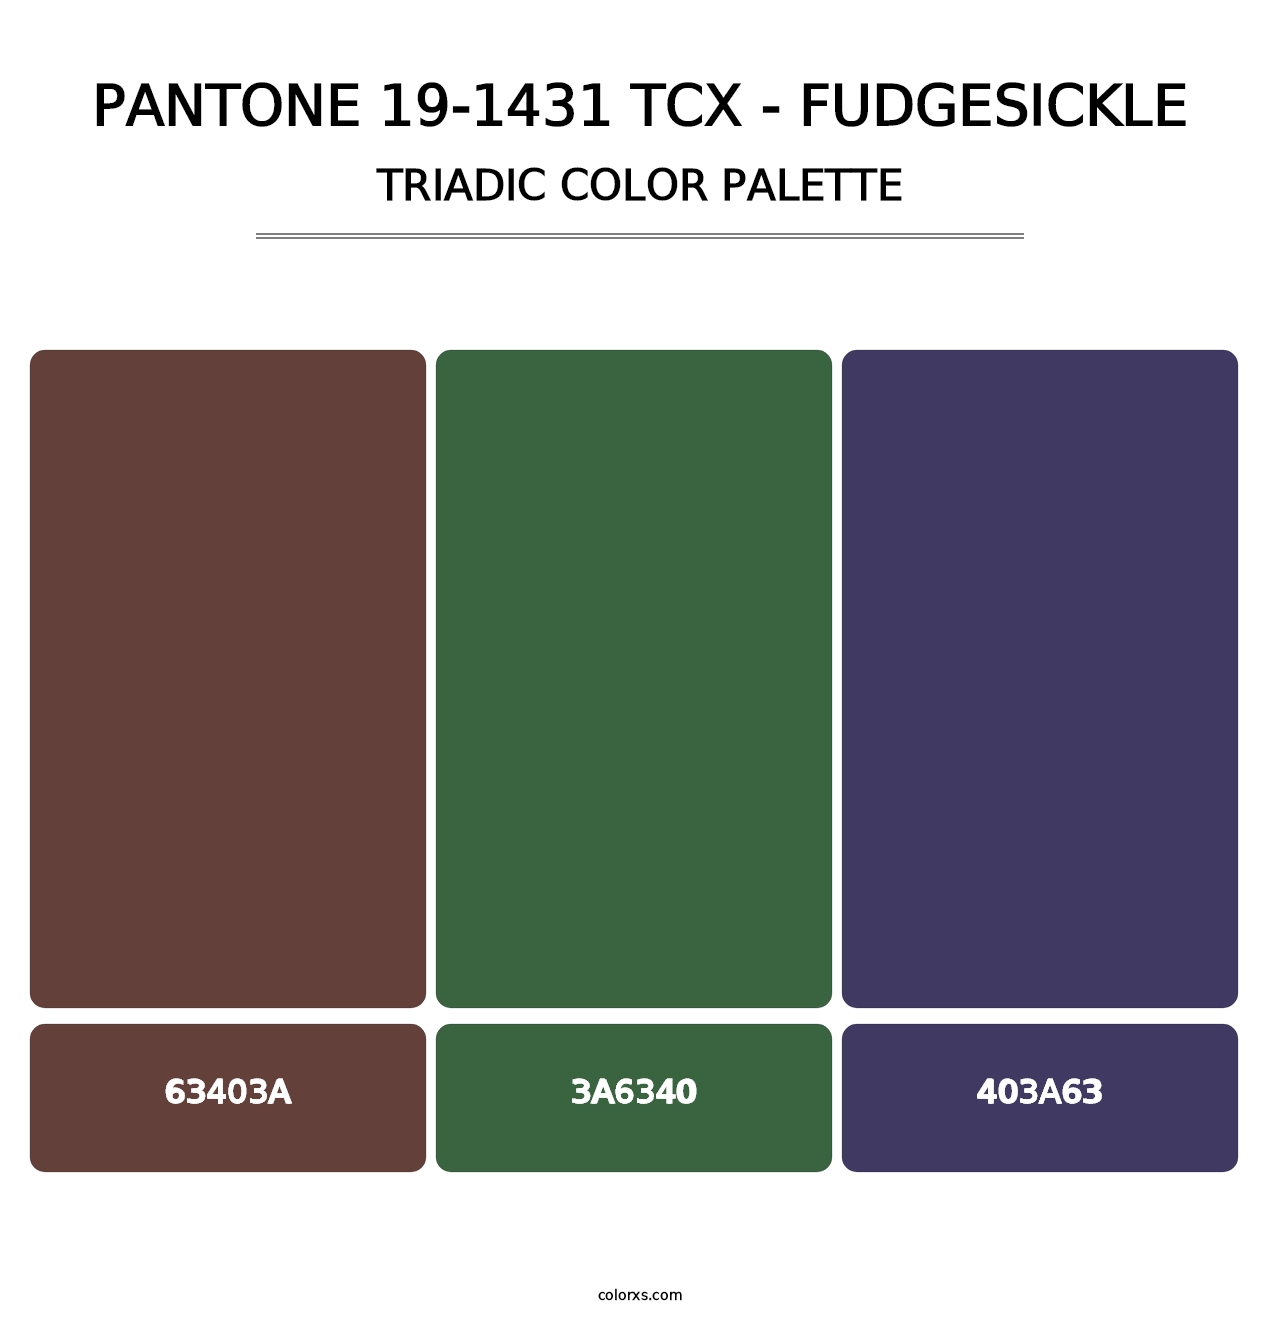 PANTONE 19-1431 TCX - Fudgesickle - Triadic Color Palette